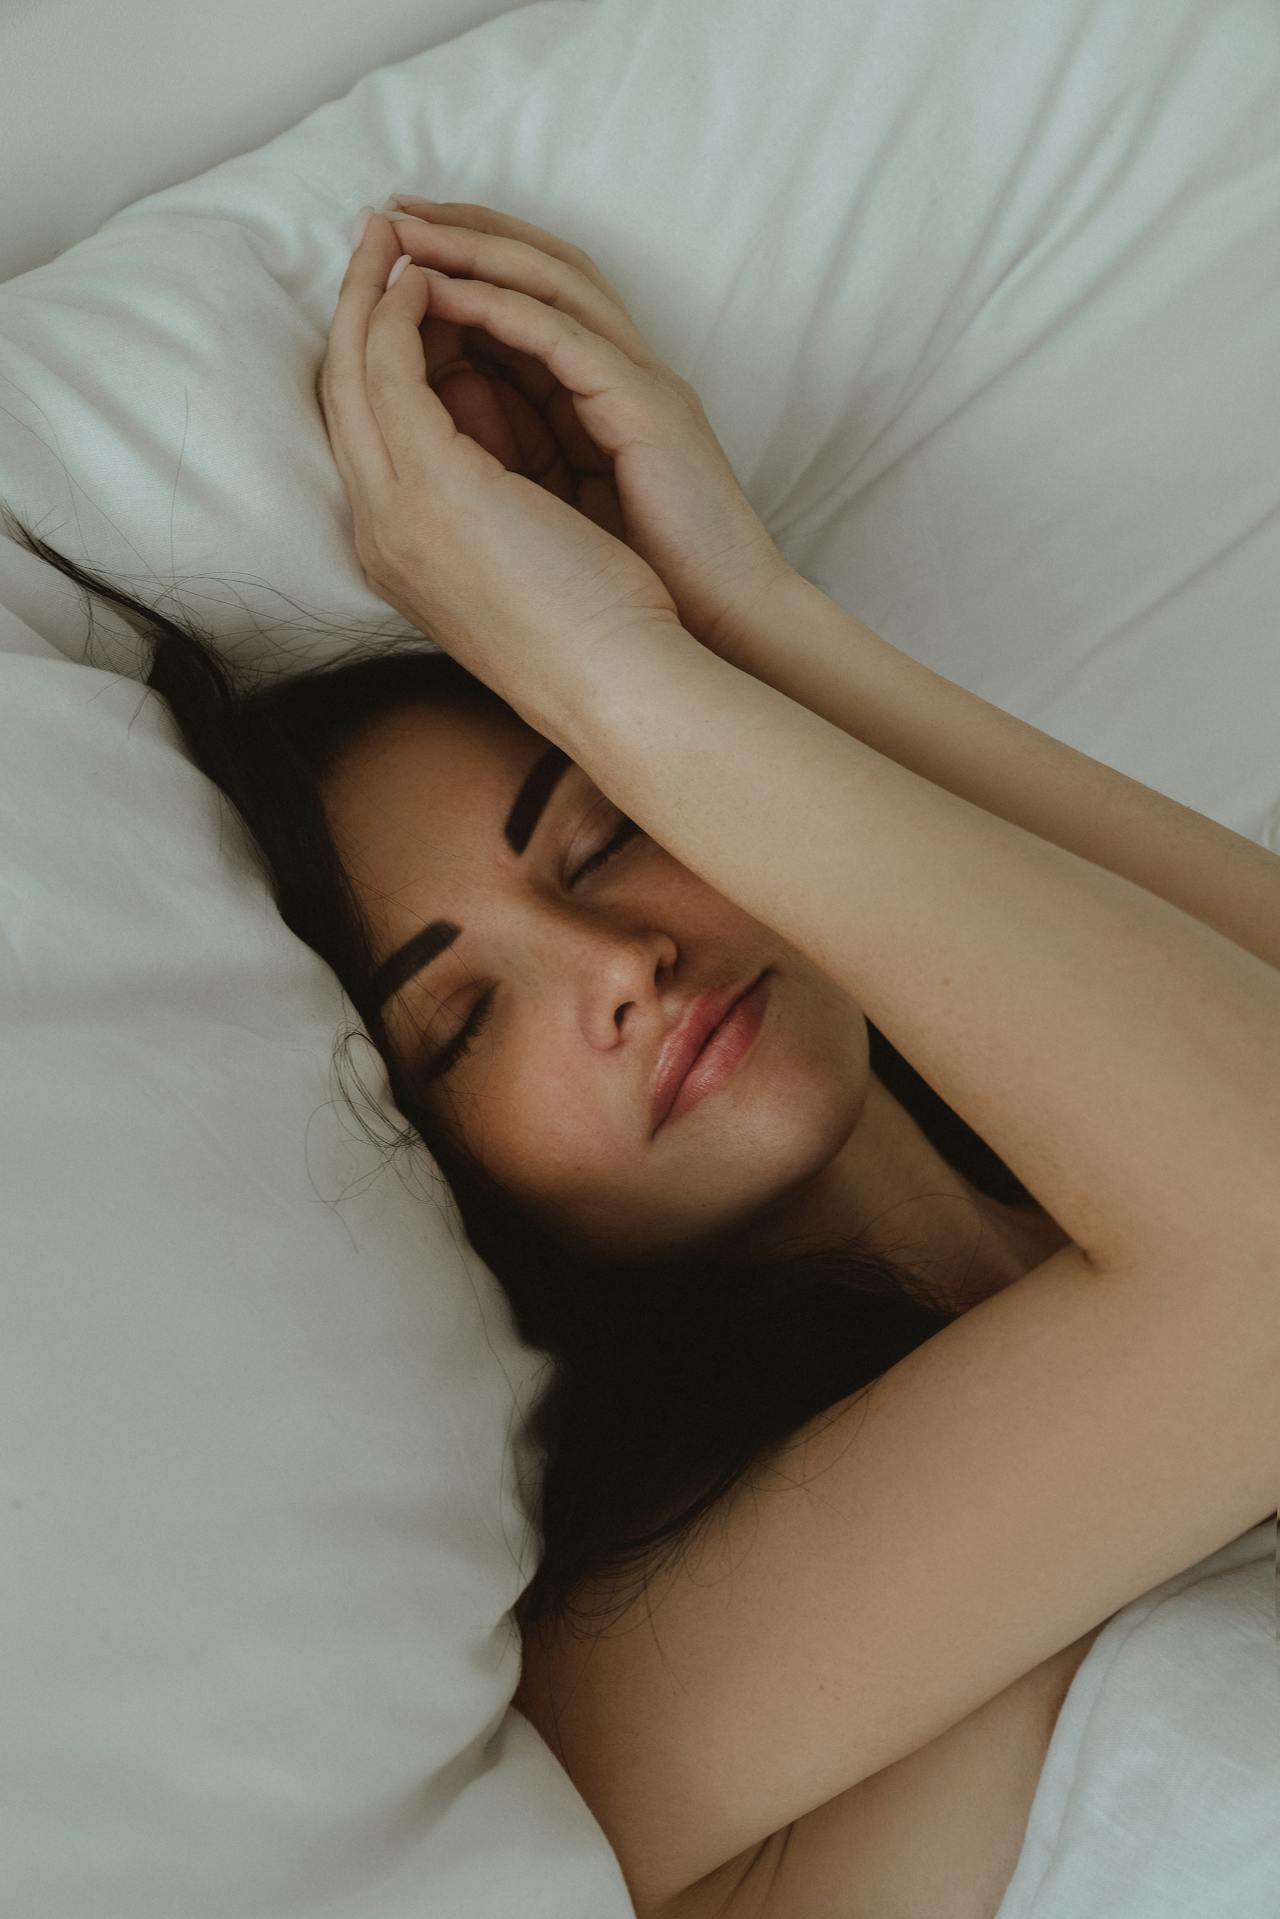 Ο ύπνος αυτές τις ώρες μπορεί να μειώσει τον κίνδυνο καρδιακής νόσου